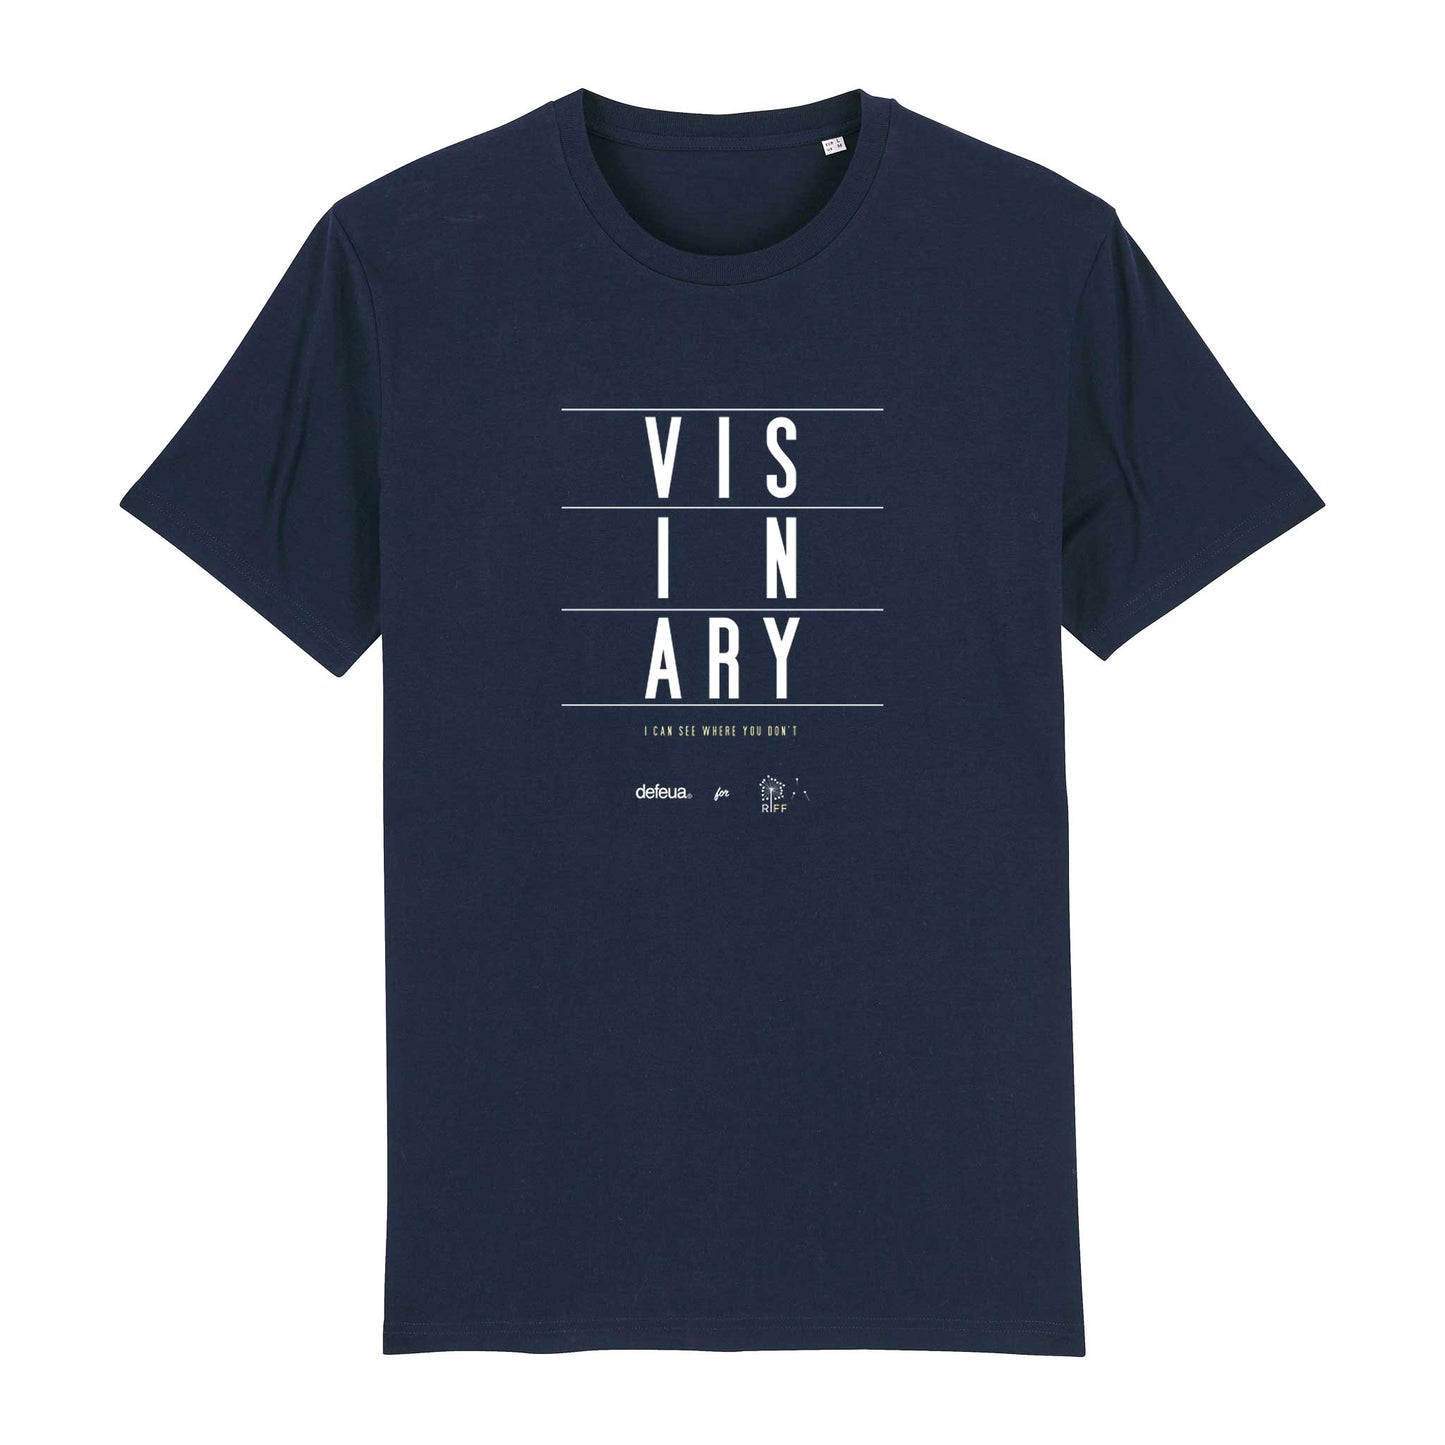 VISIONARY la t-shirt dei visionari, realizzata per il Riviera  International Film Festival